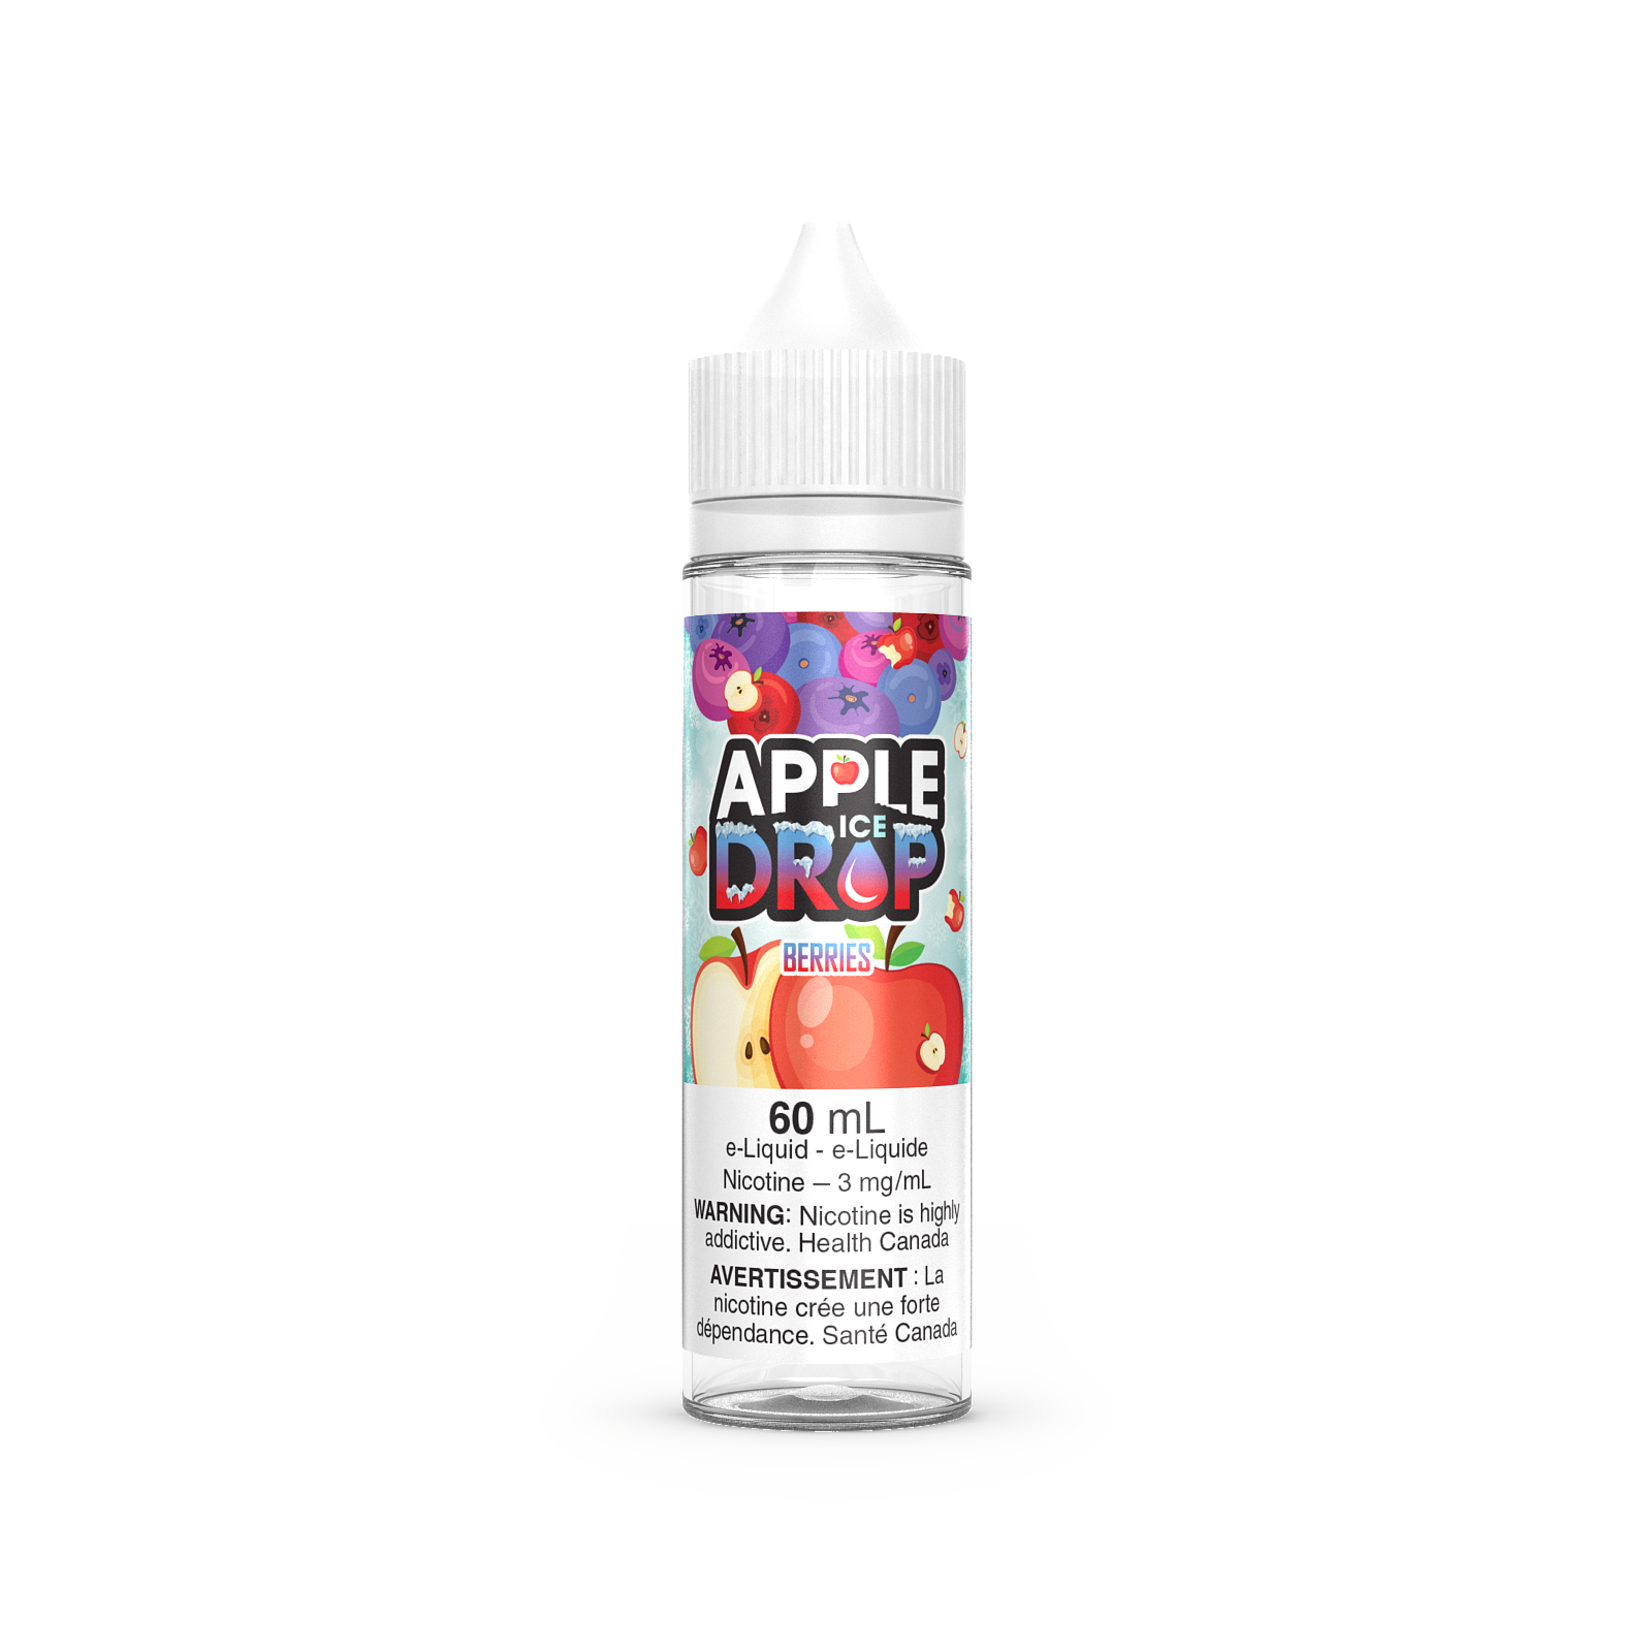 Apple Drop Ice Berries - Apple Drop Ice